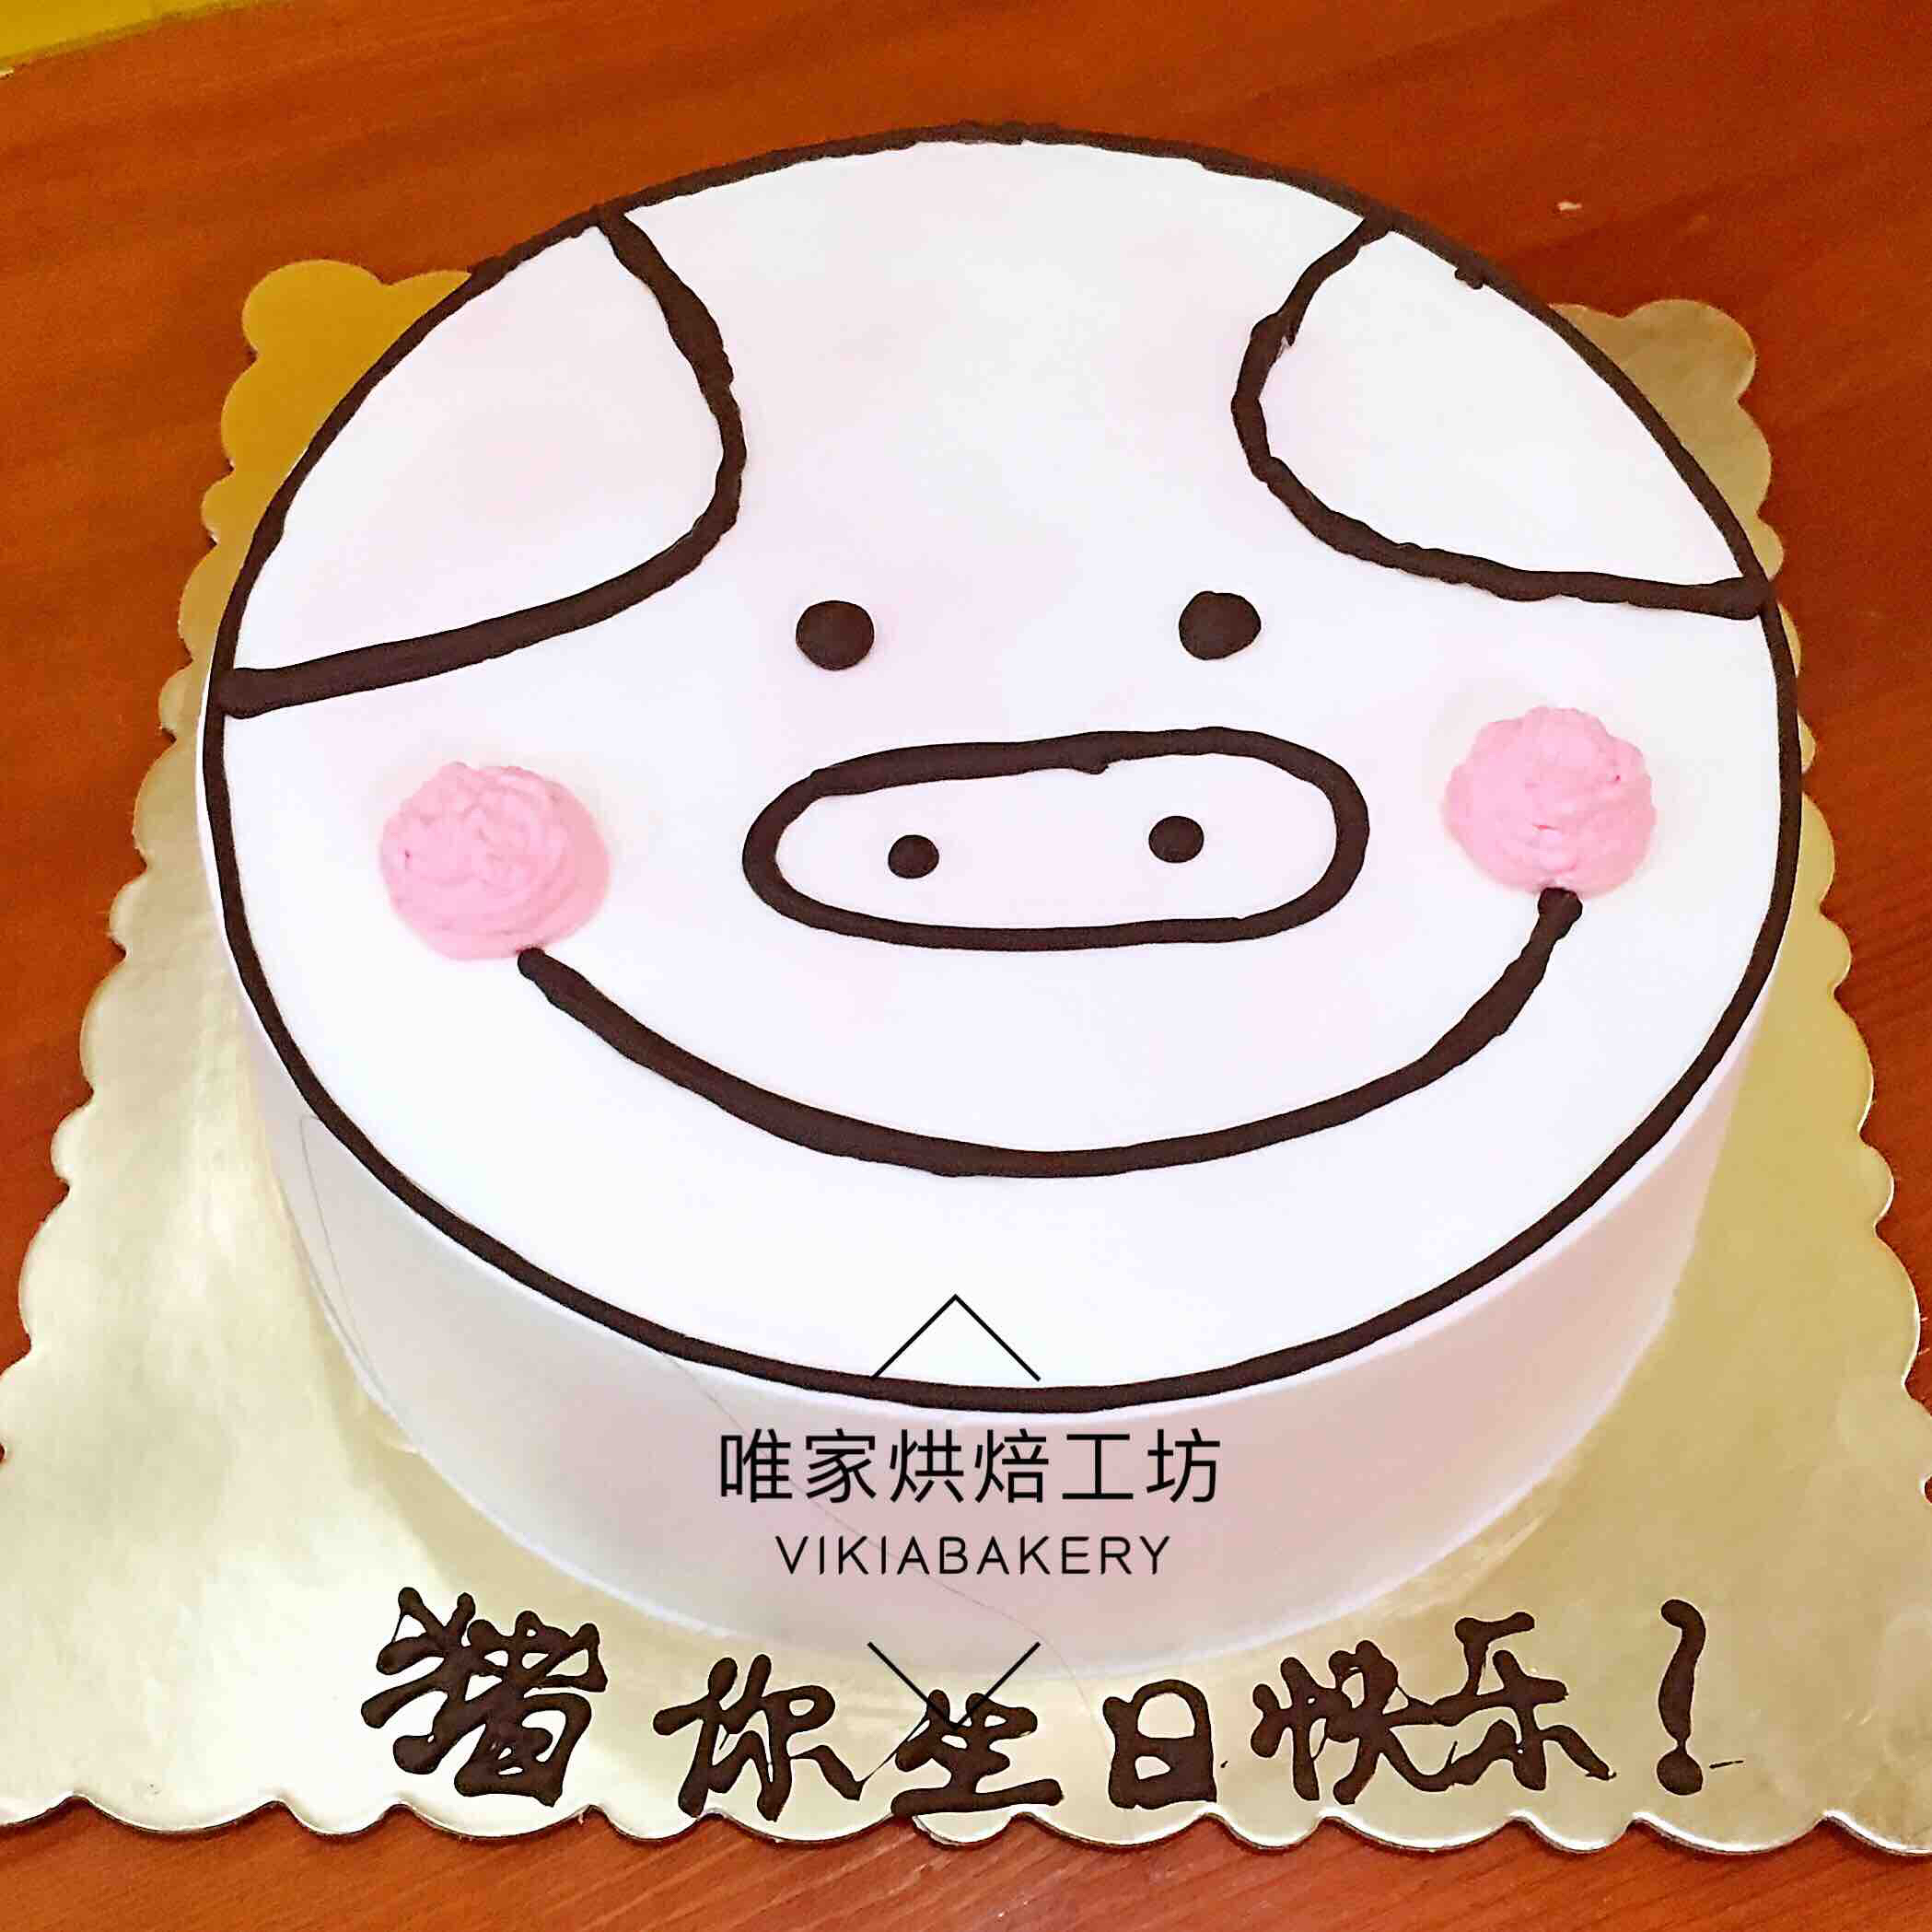 猪你生日快乐